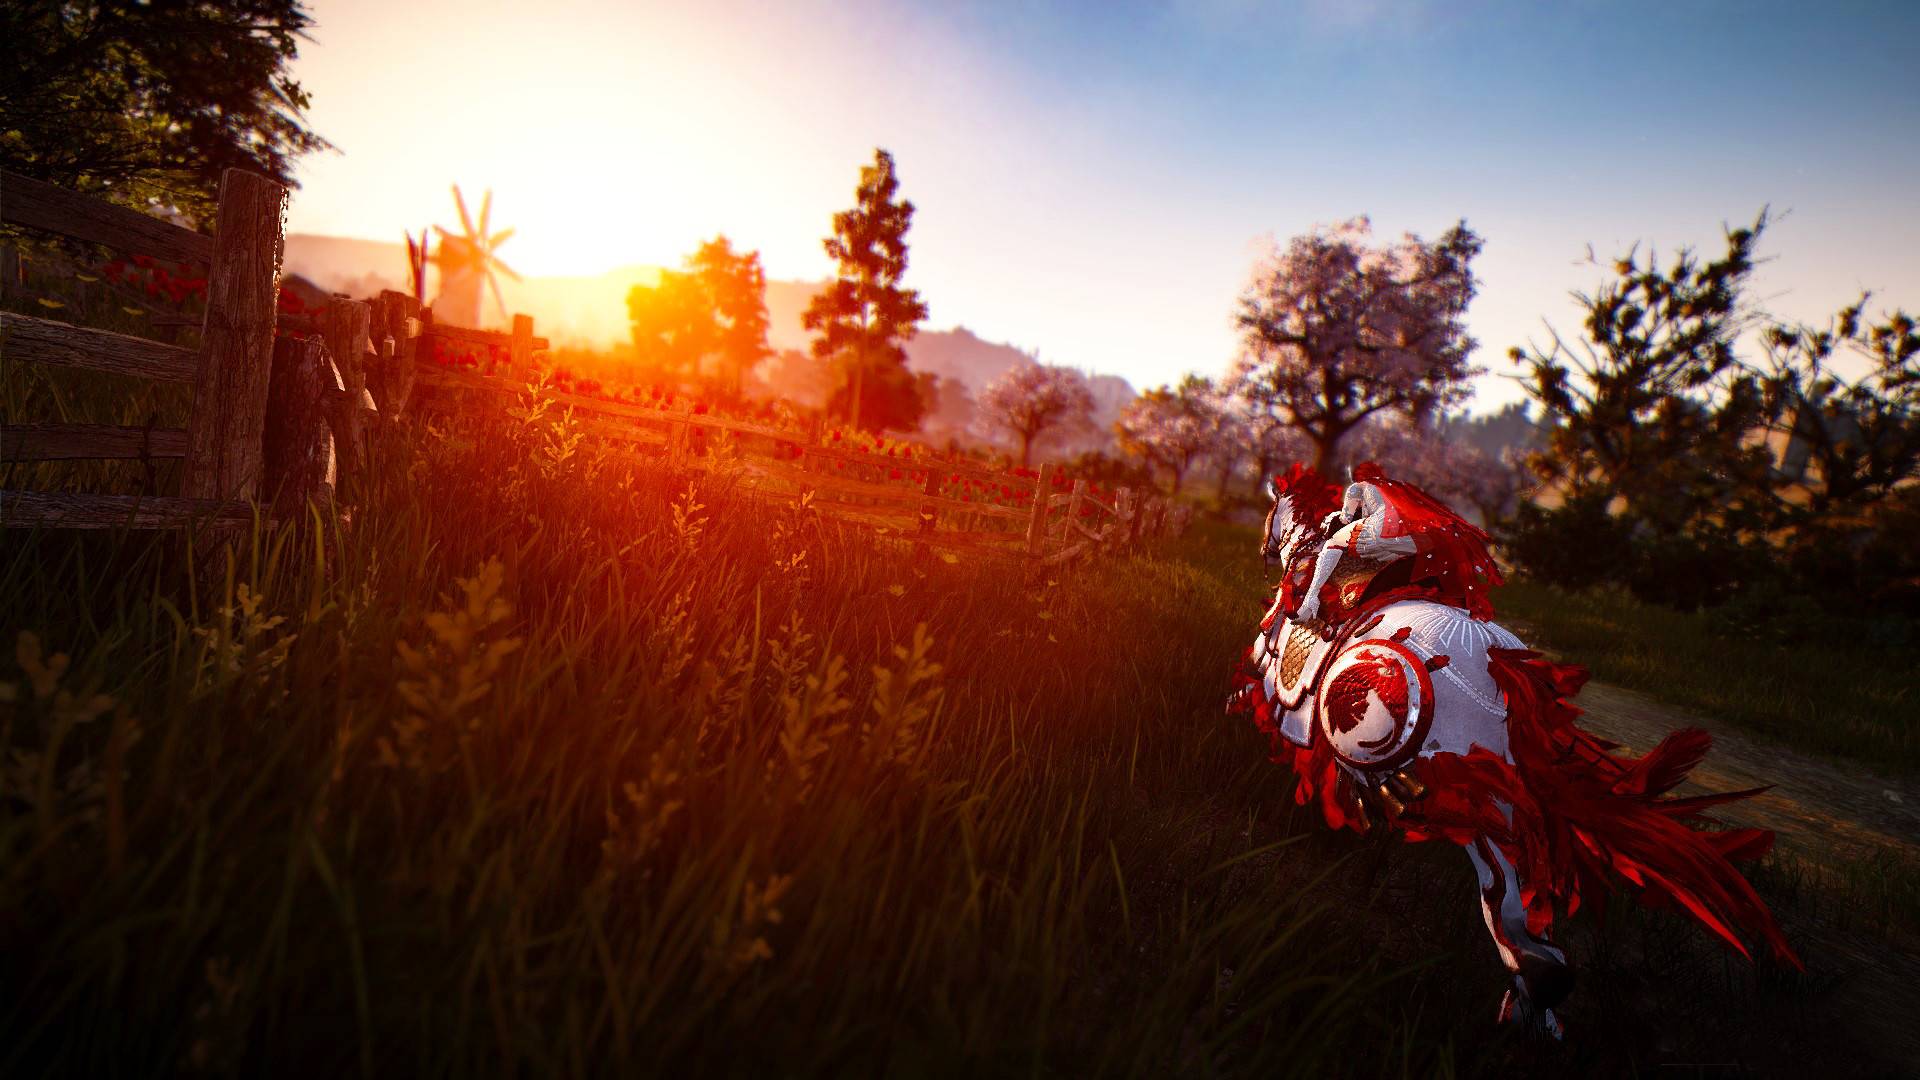 सर्वोत्कृष्ट एमएमओआरपीजी गेम्स: ब्लॅक डेझर्ट ऑनलाईन. प्रतिमेत सूर्यास्ताच्या दिशेने घोड्यावर बसलेला माणूस दाखवते